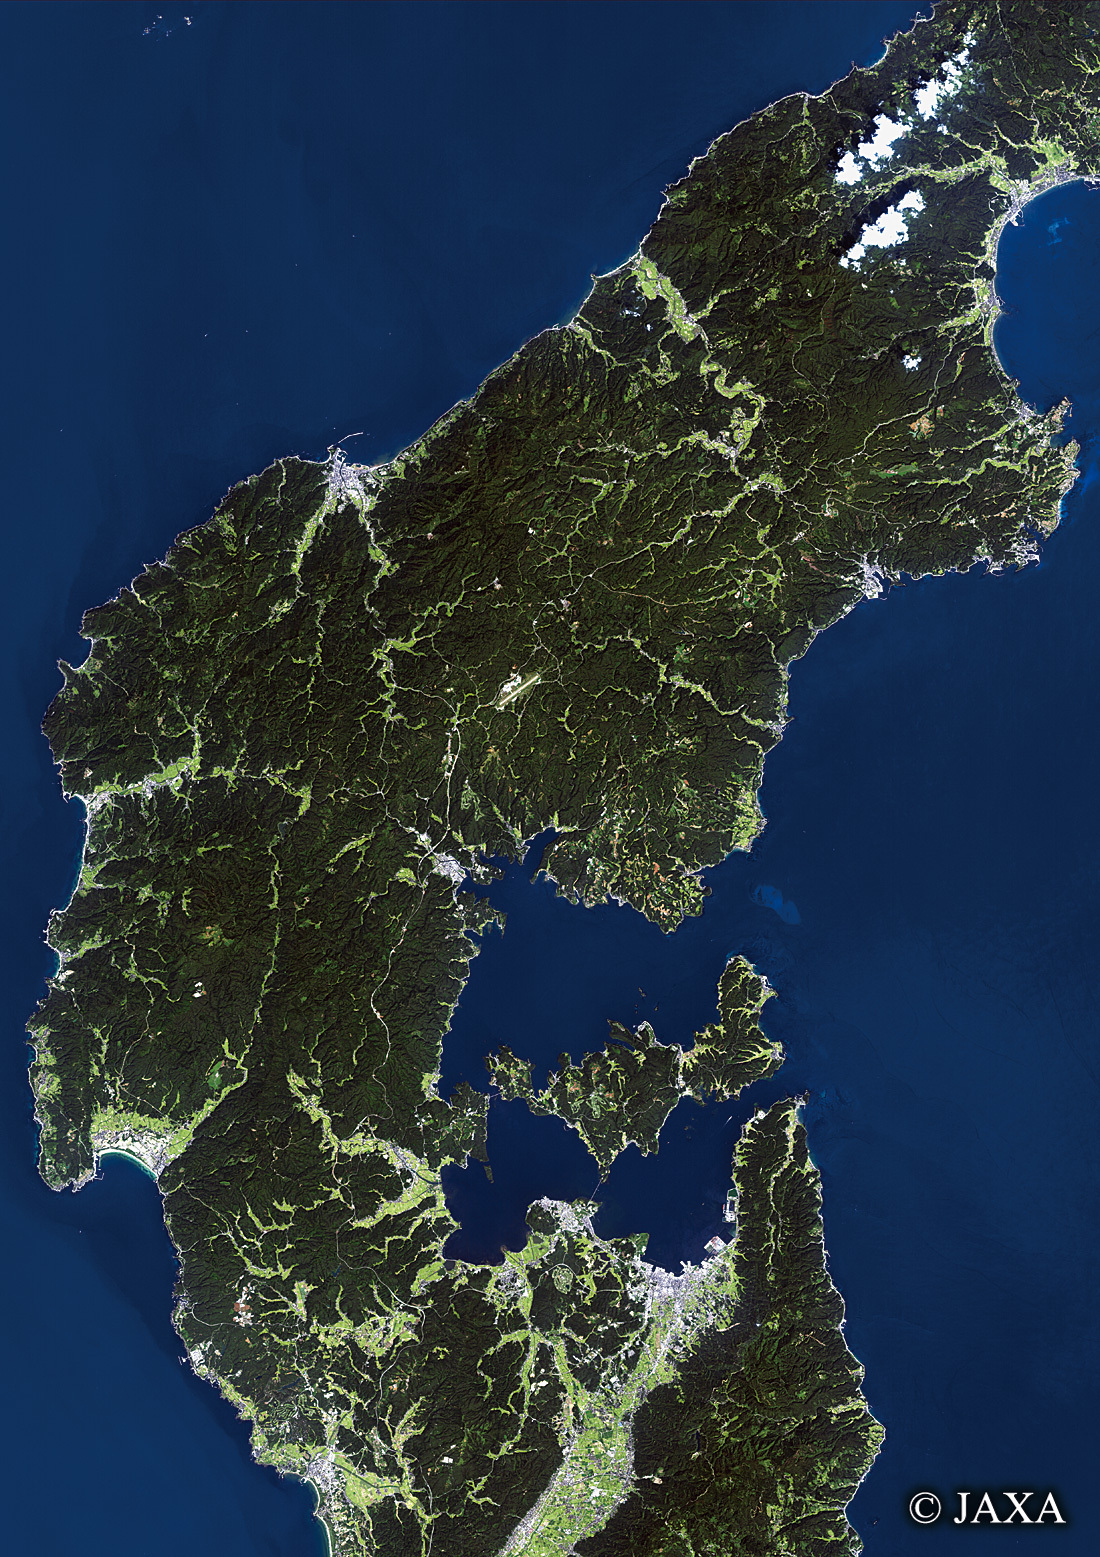 だいちから見た日本の都市 能登空港と周辺地域:衛星画像